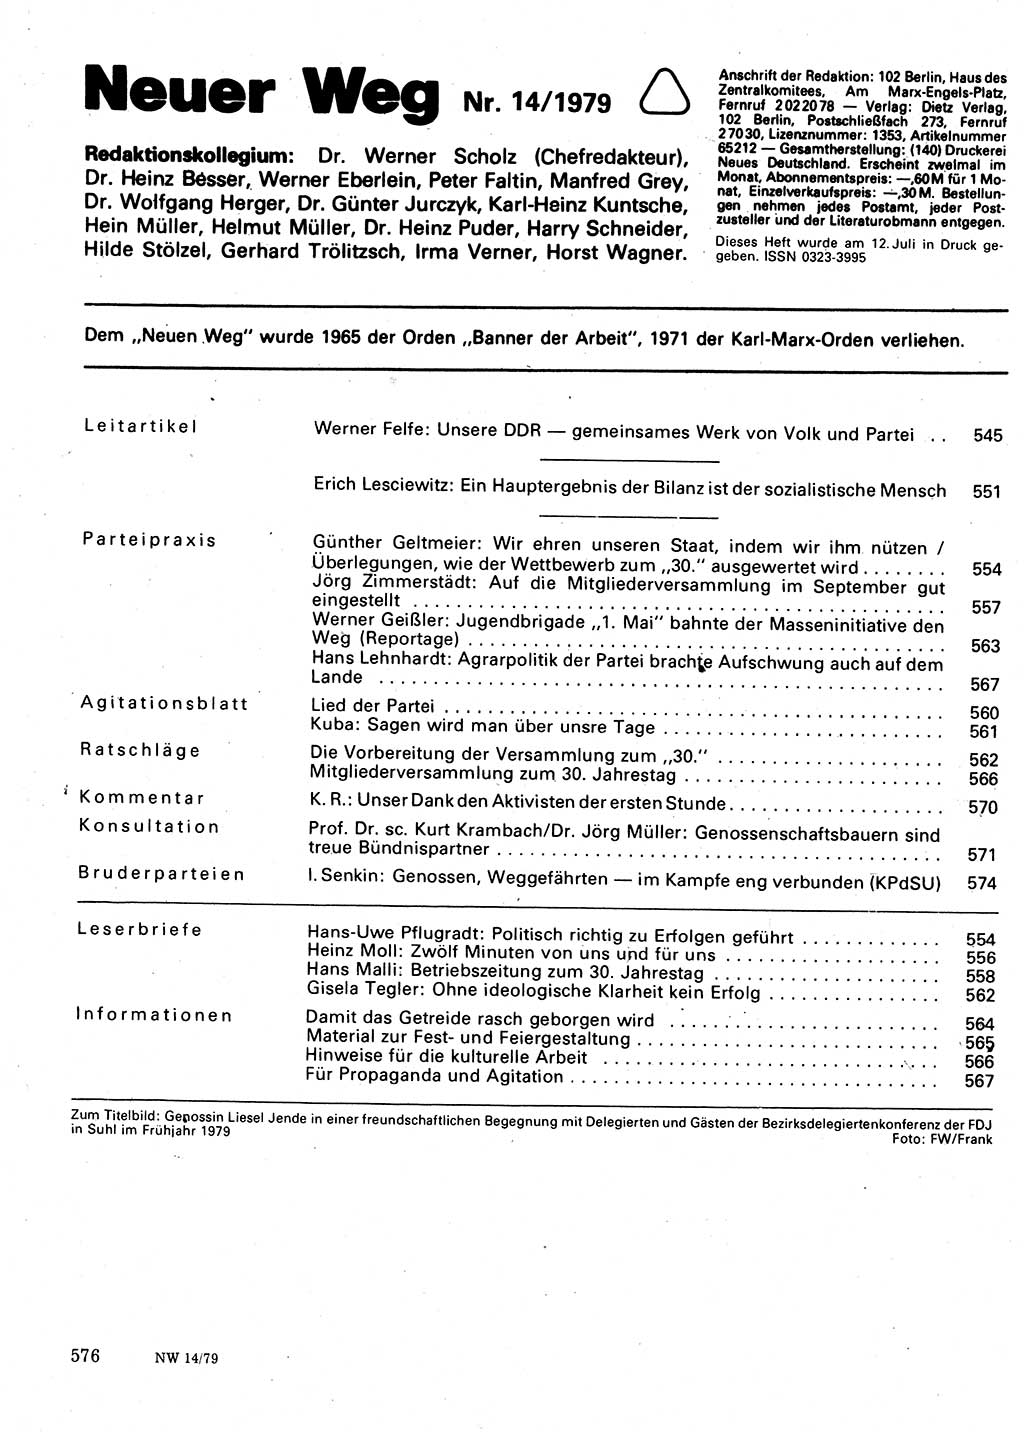 Neuer Weg (NW), Organ des Zentralkomitees (ZK) der SED (Sozialistische Einheitspartei Deutschlands) für Fragen des Parteilebens, 34. Jahrgang [Deutsche Demokratische Republik (DDR)] 1979, Seite 576 (NW ZK SED DDR 1979, S. 576)